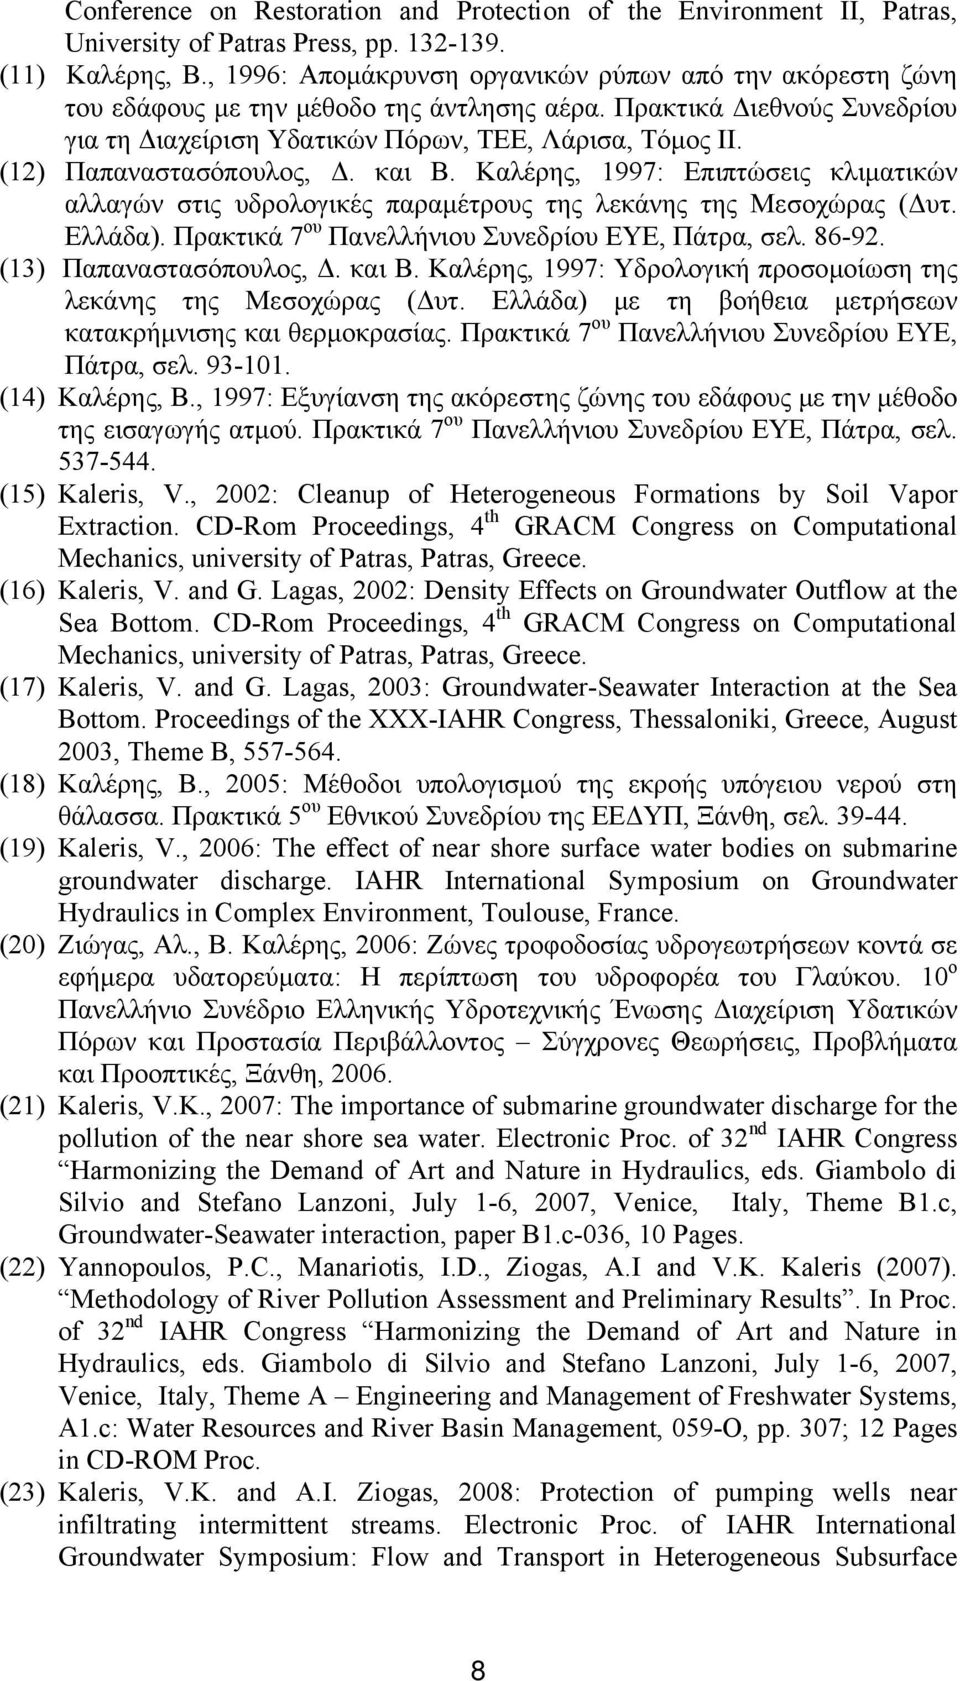 (12) Παπαναστασόπουλος, Δ. και Β. Καλέρης, 1997: Επιπτώσεις κλιματικών αλλαγών στις υδρολογικές παραμέτρους της λεκάνης της Μεσοχώρας (Δυτ. Ελλάδα).